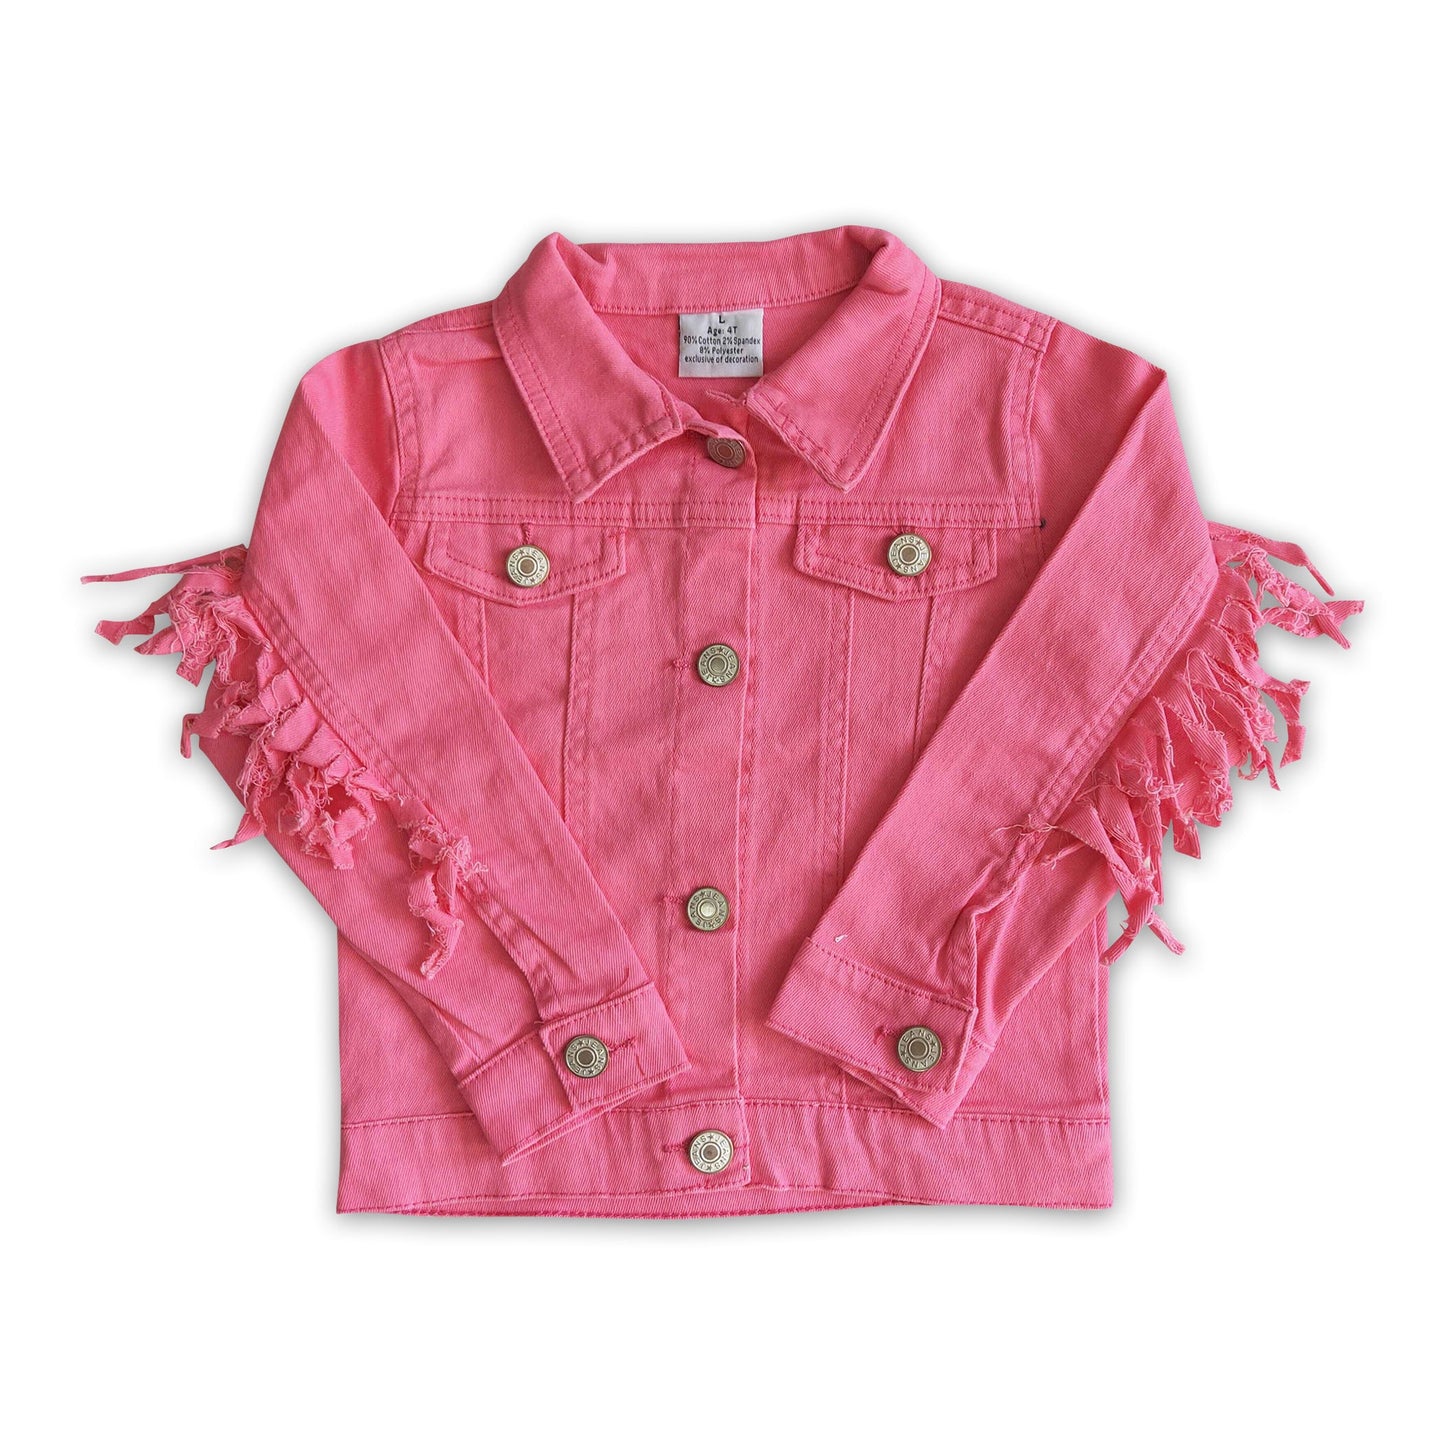 Hot pink color tassels girls spring denim jacket